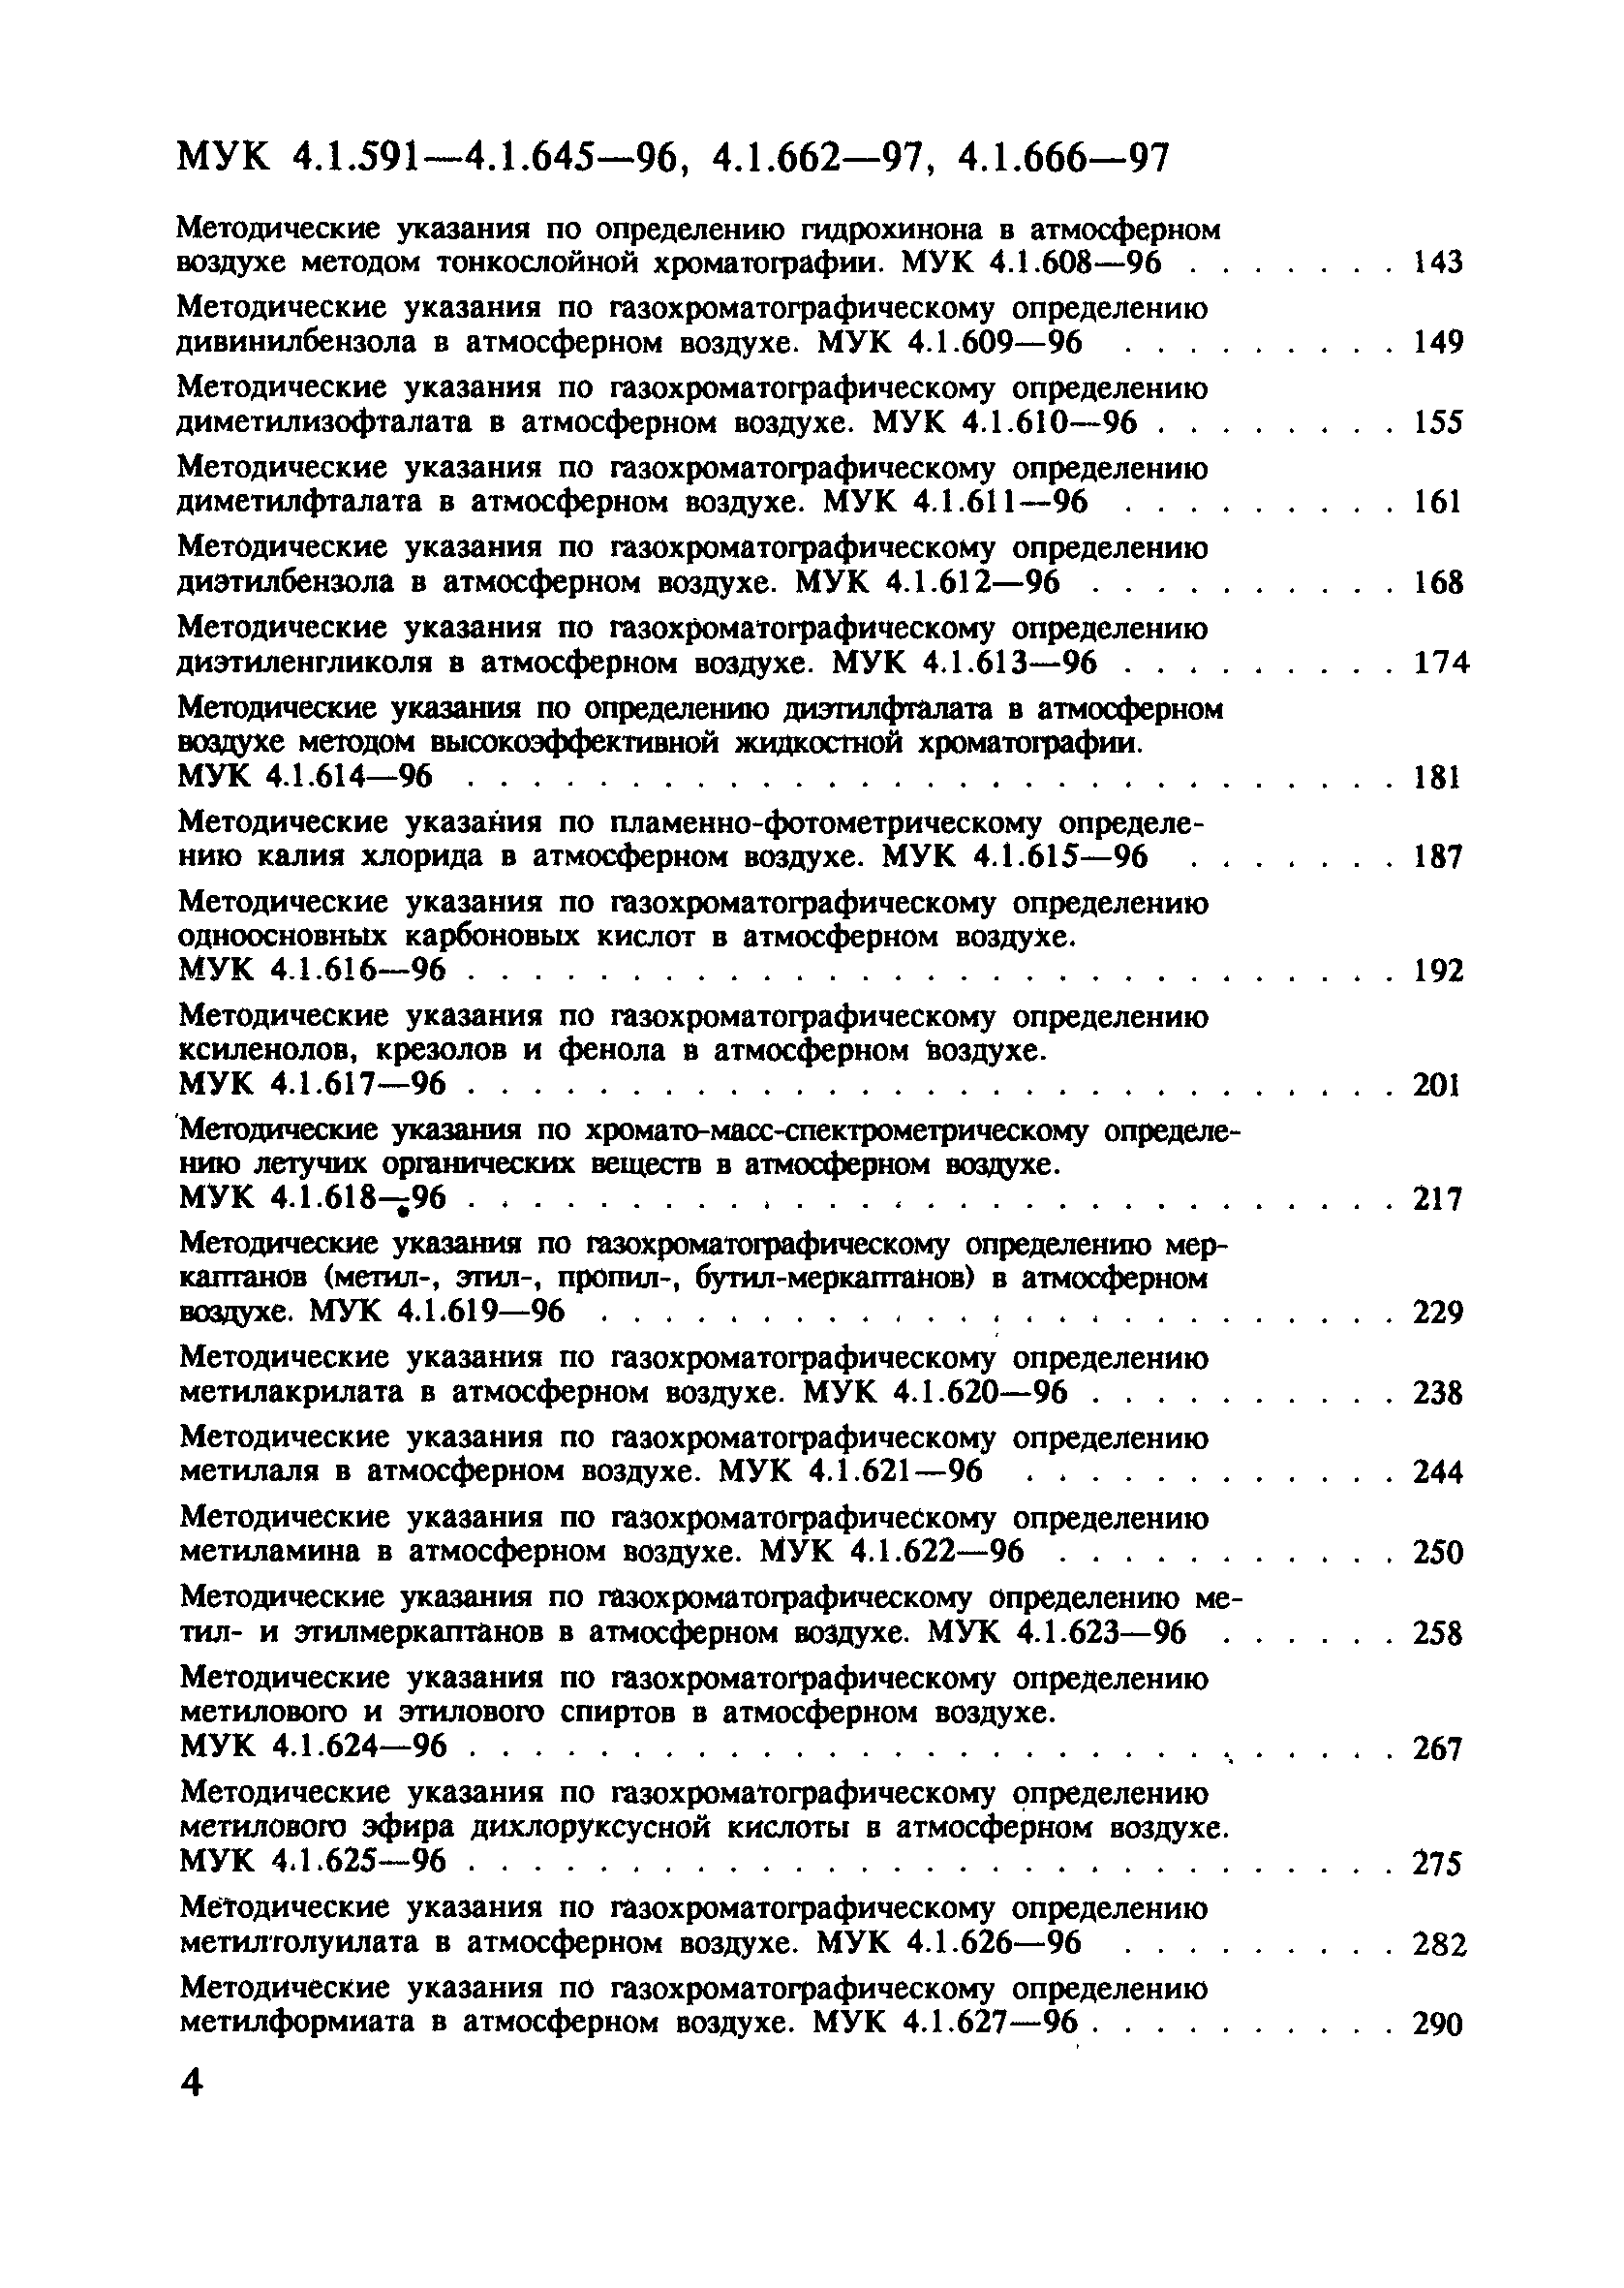 МУК 4.1.613-96